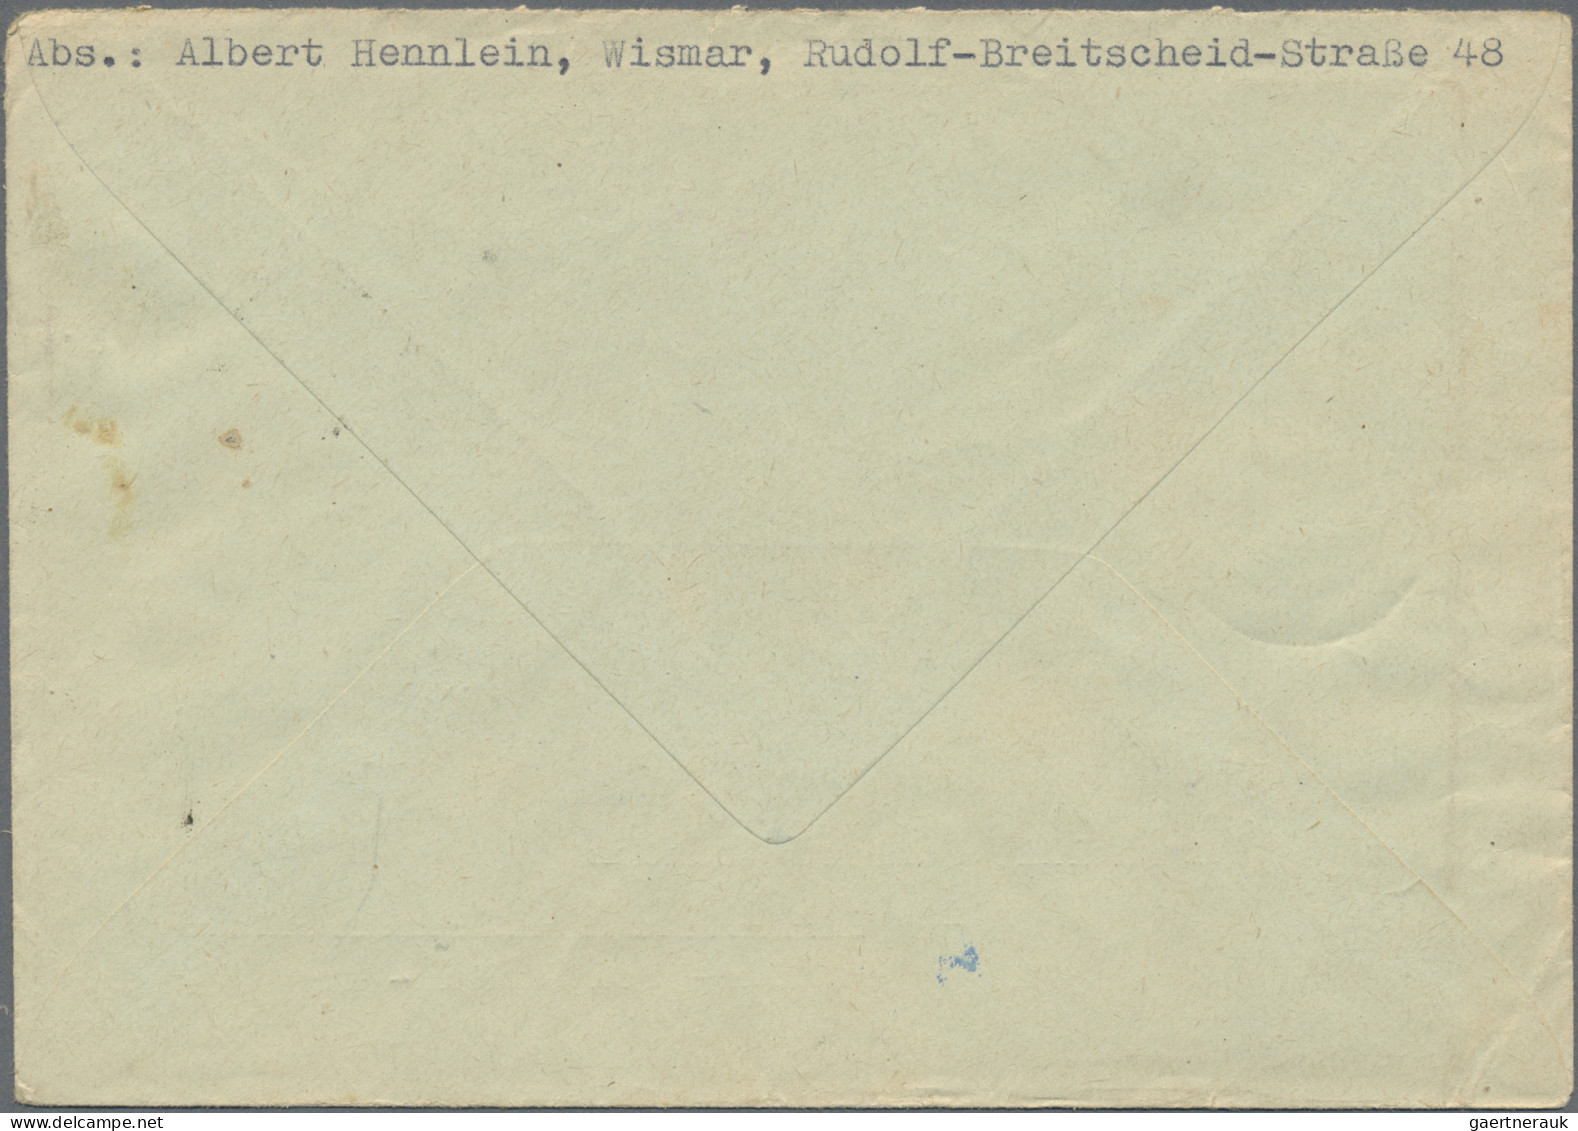 DDR: 1950/1970, Partie von 41 Briefen und Karten mit interessanten Frankaturen d